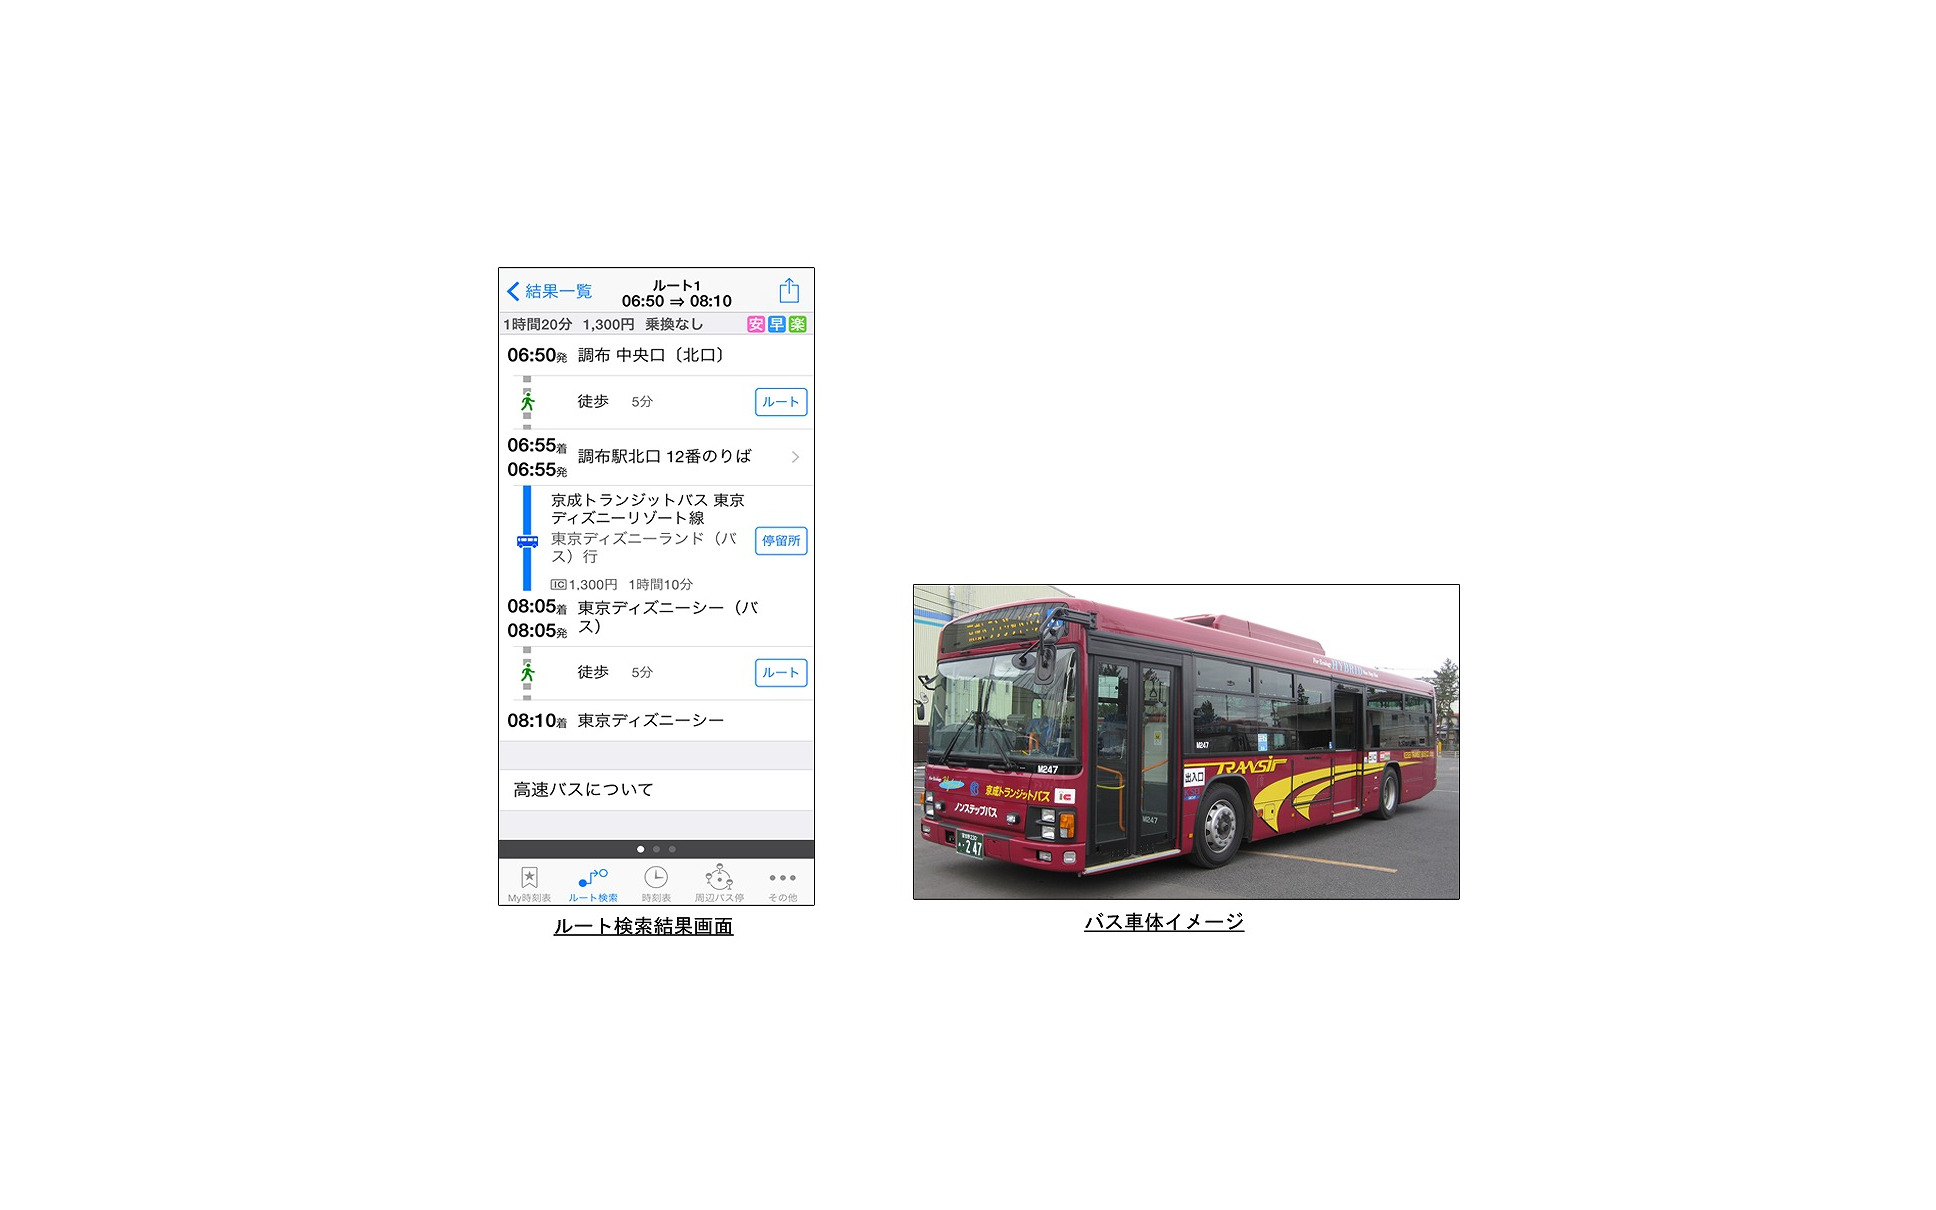 ナビタイム 対応バス路線に庄内交通 加越能バス 京成トランジットバスを追加 1枚目の写真 画像 レスポンス Response Jp